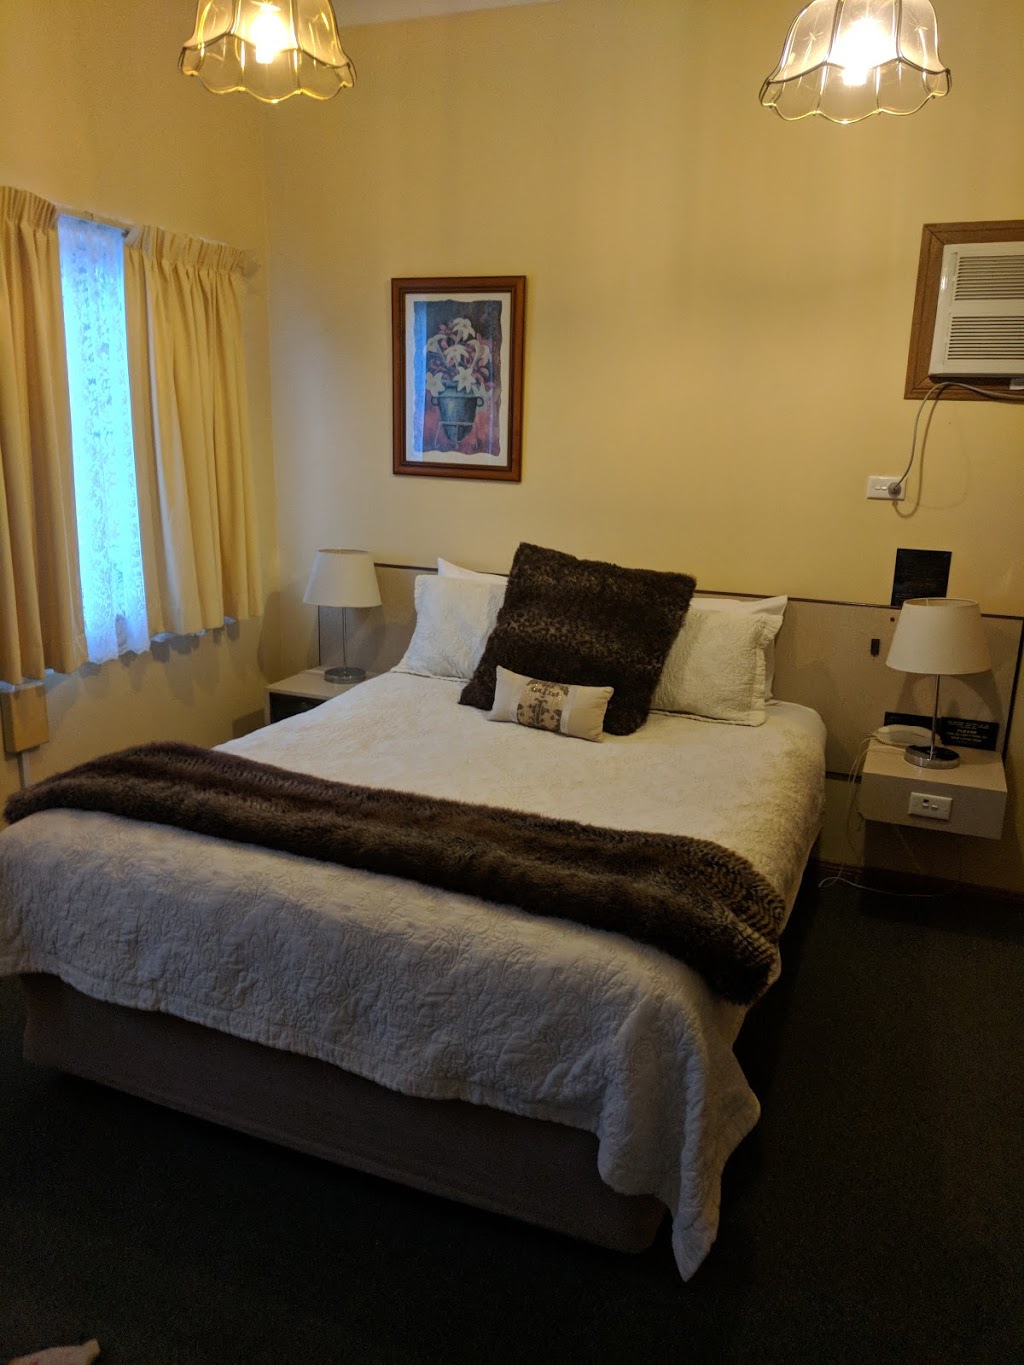 Westwood Motor Inn | lodging | 62 Barney St, Armidale NSW 2350, Australia | 0267728000 OR +61 2 6772 8000